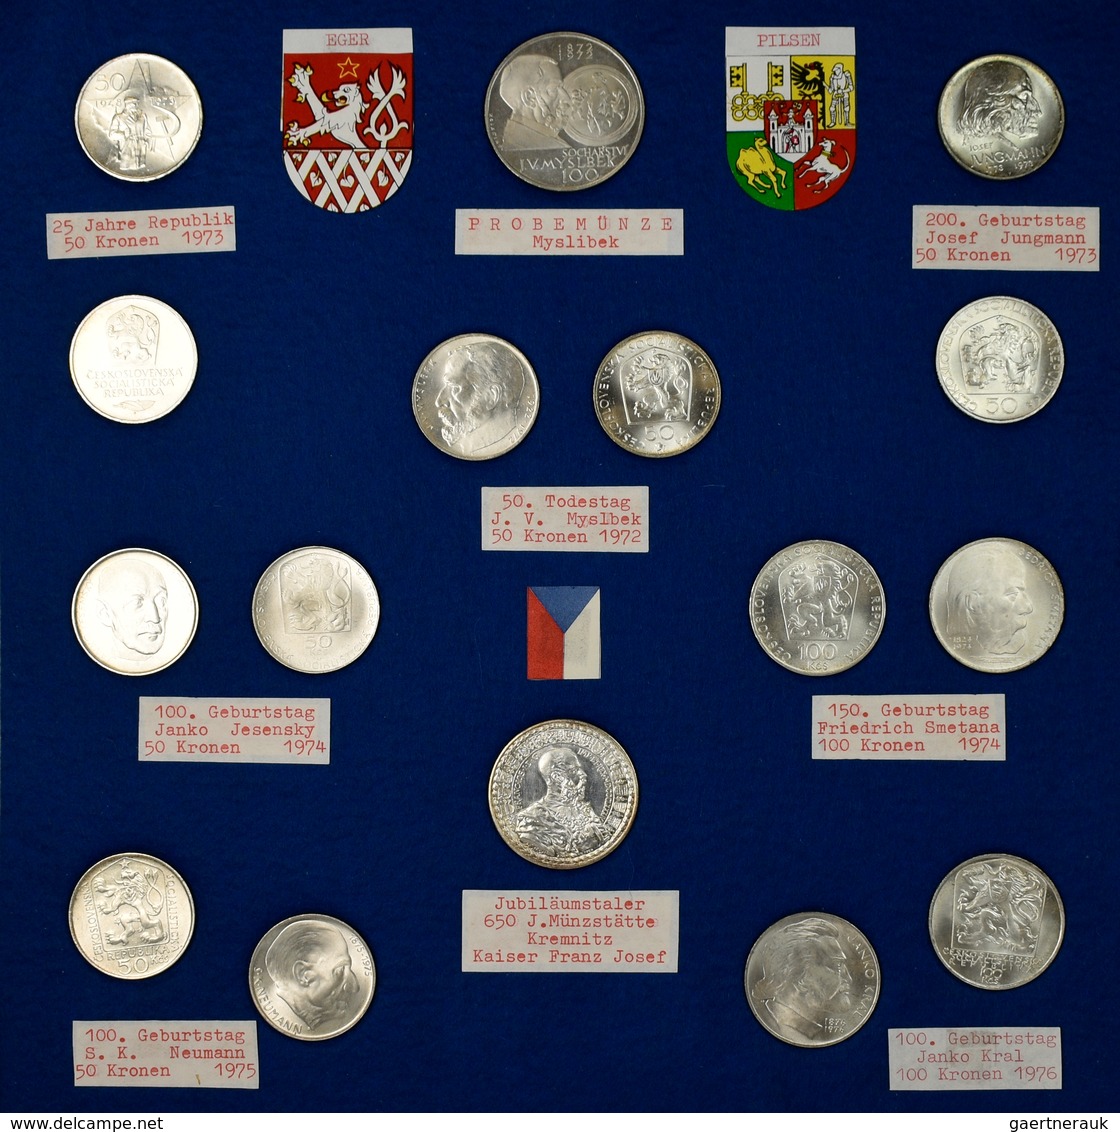 Tschechoslowakei: Eine Umfangreiche Typensammlung Münzen der Tschechoslowakei seit der Staatsgründun